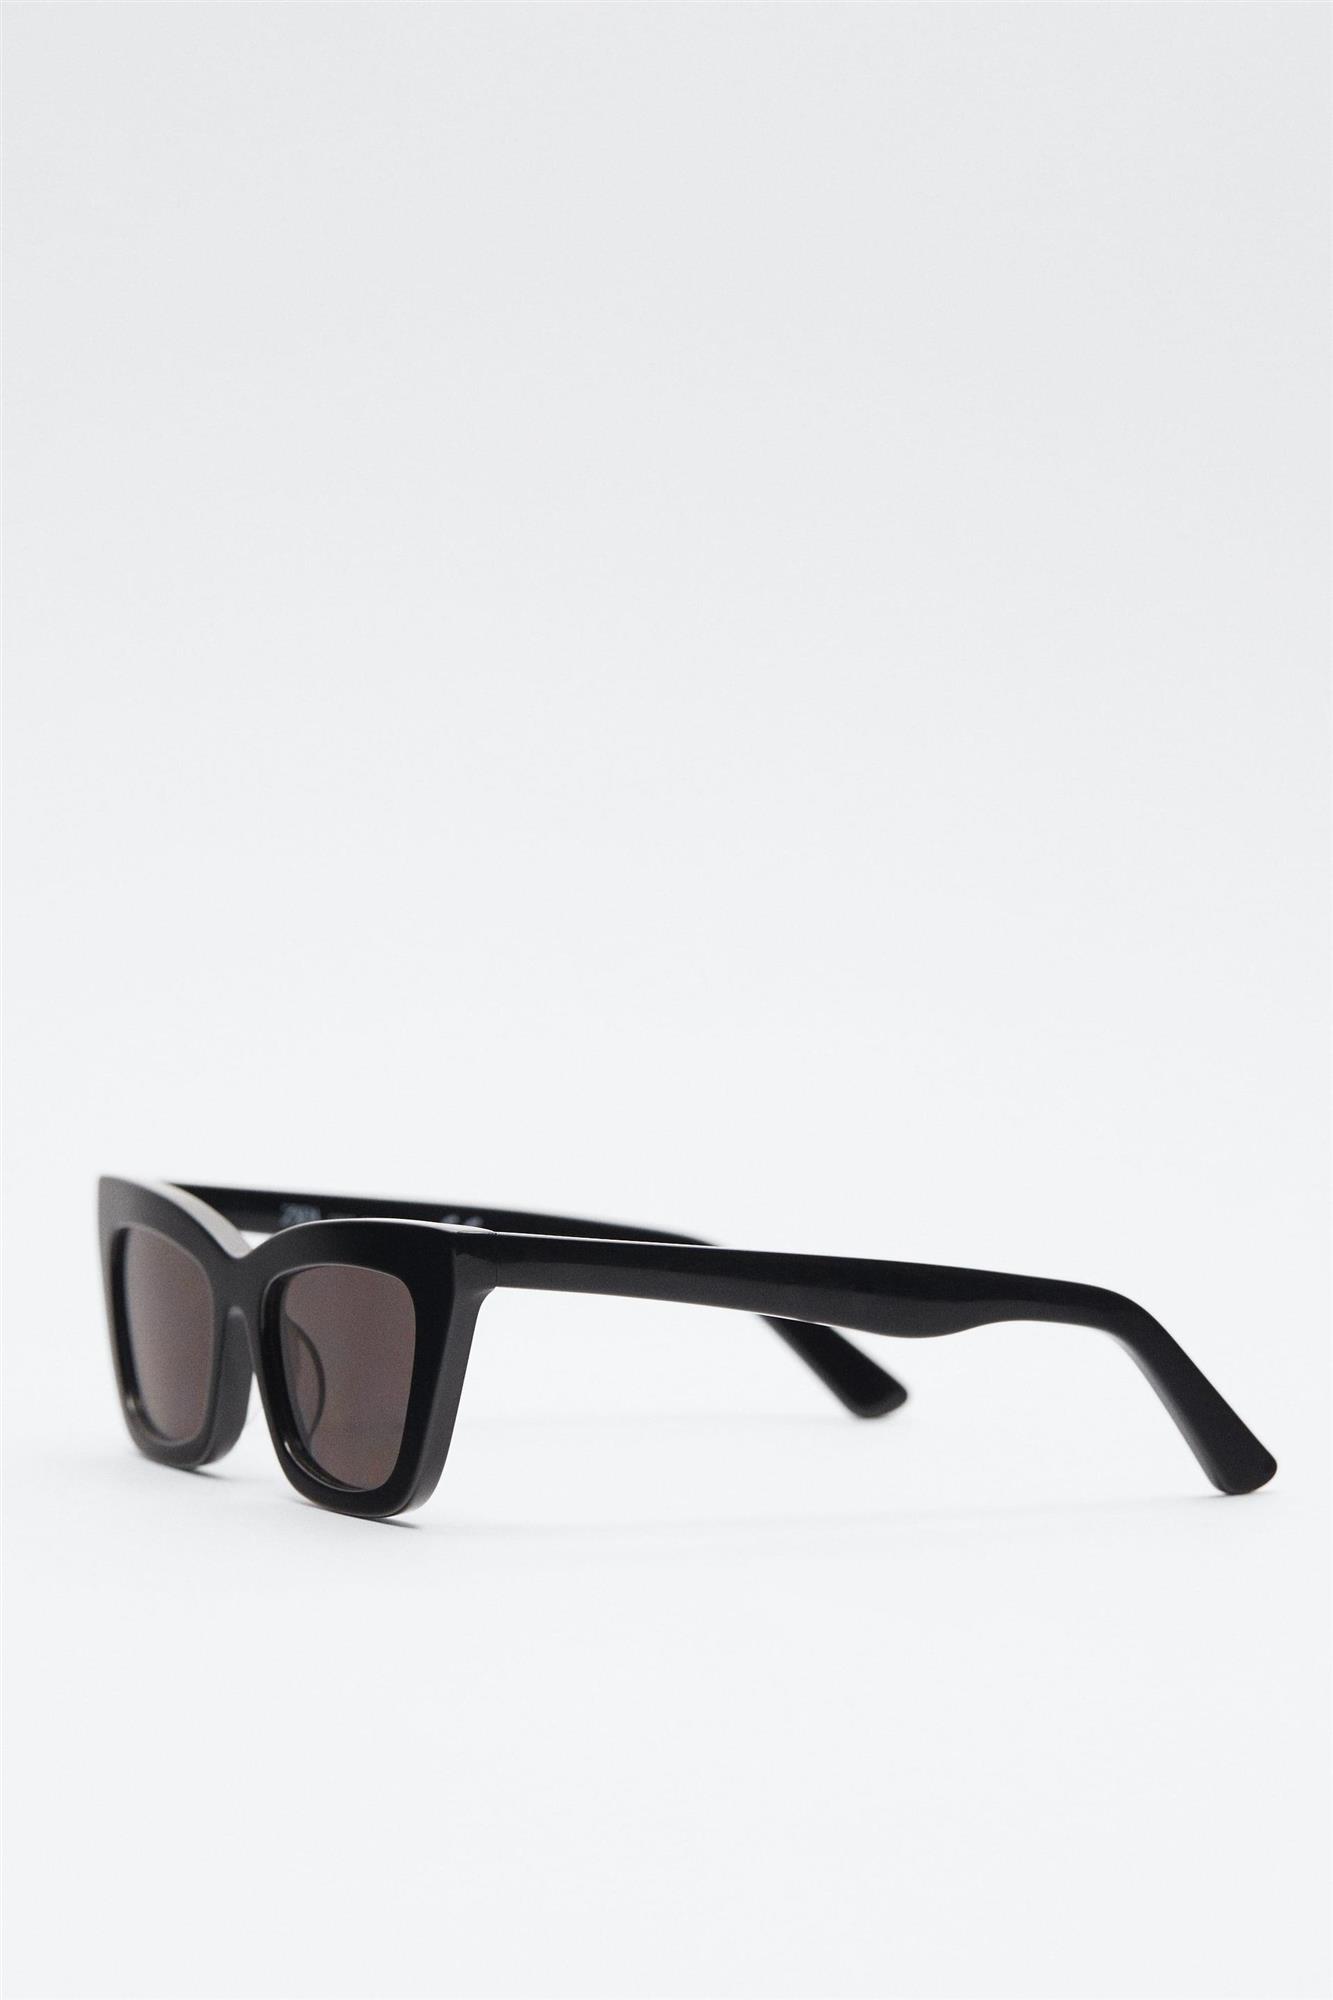 Gafas de sol cuadradas en negro, de Zara